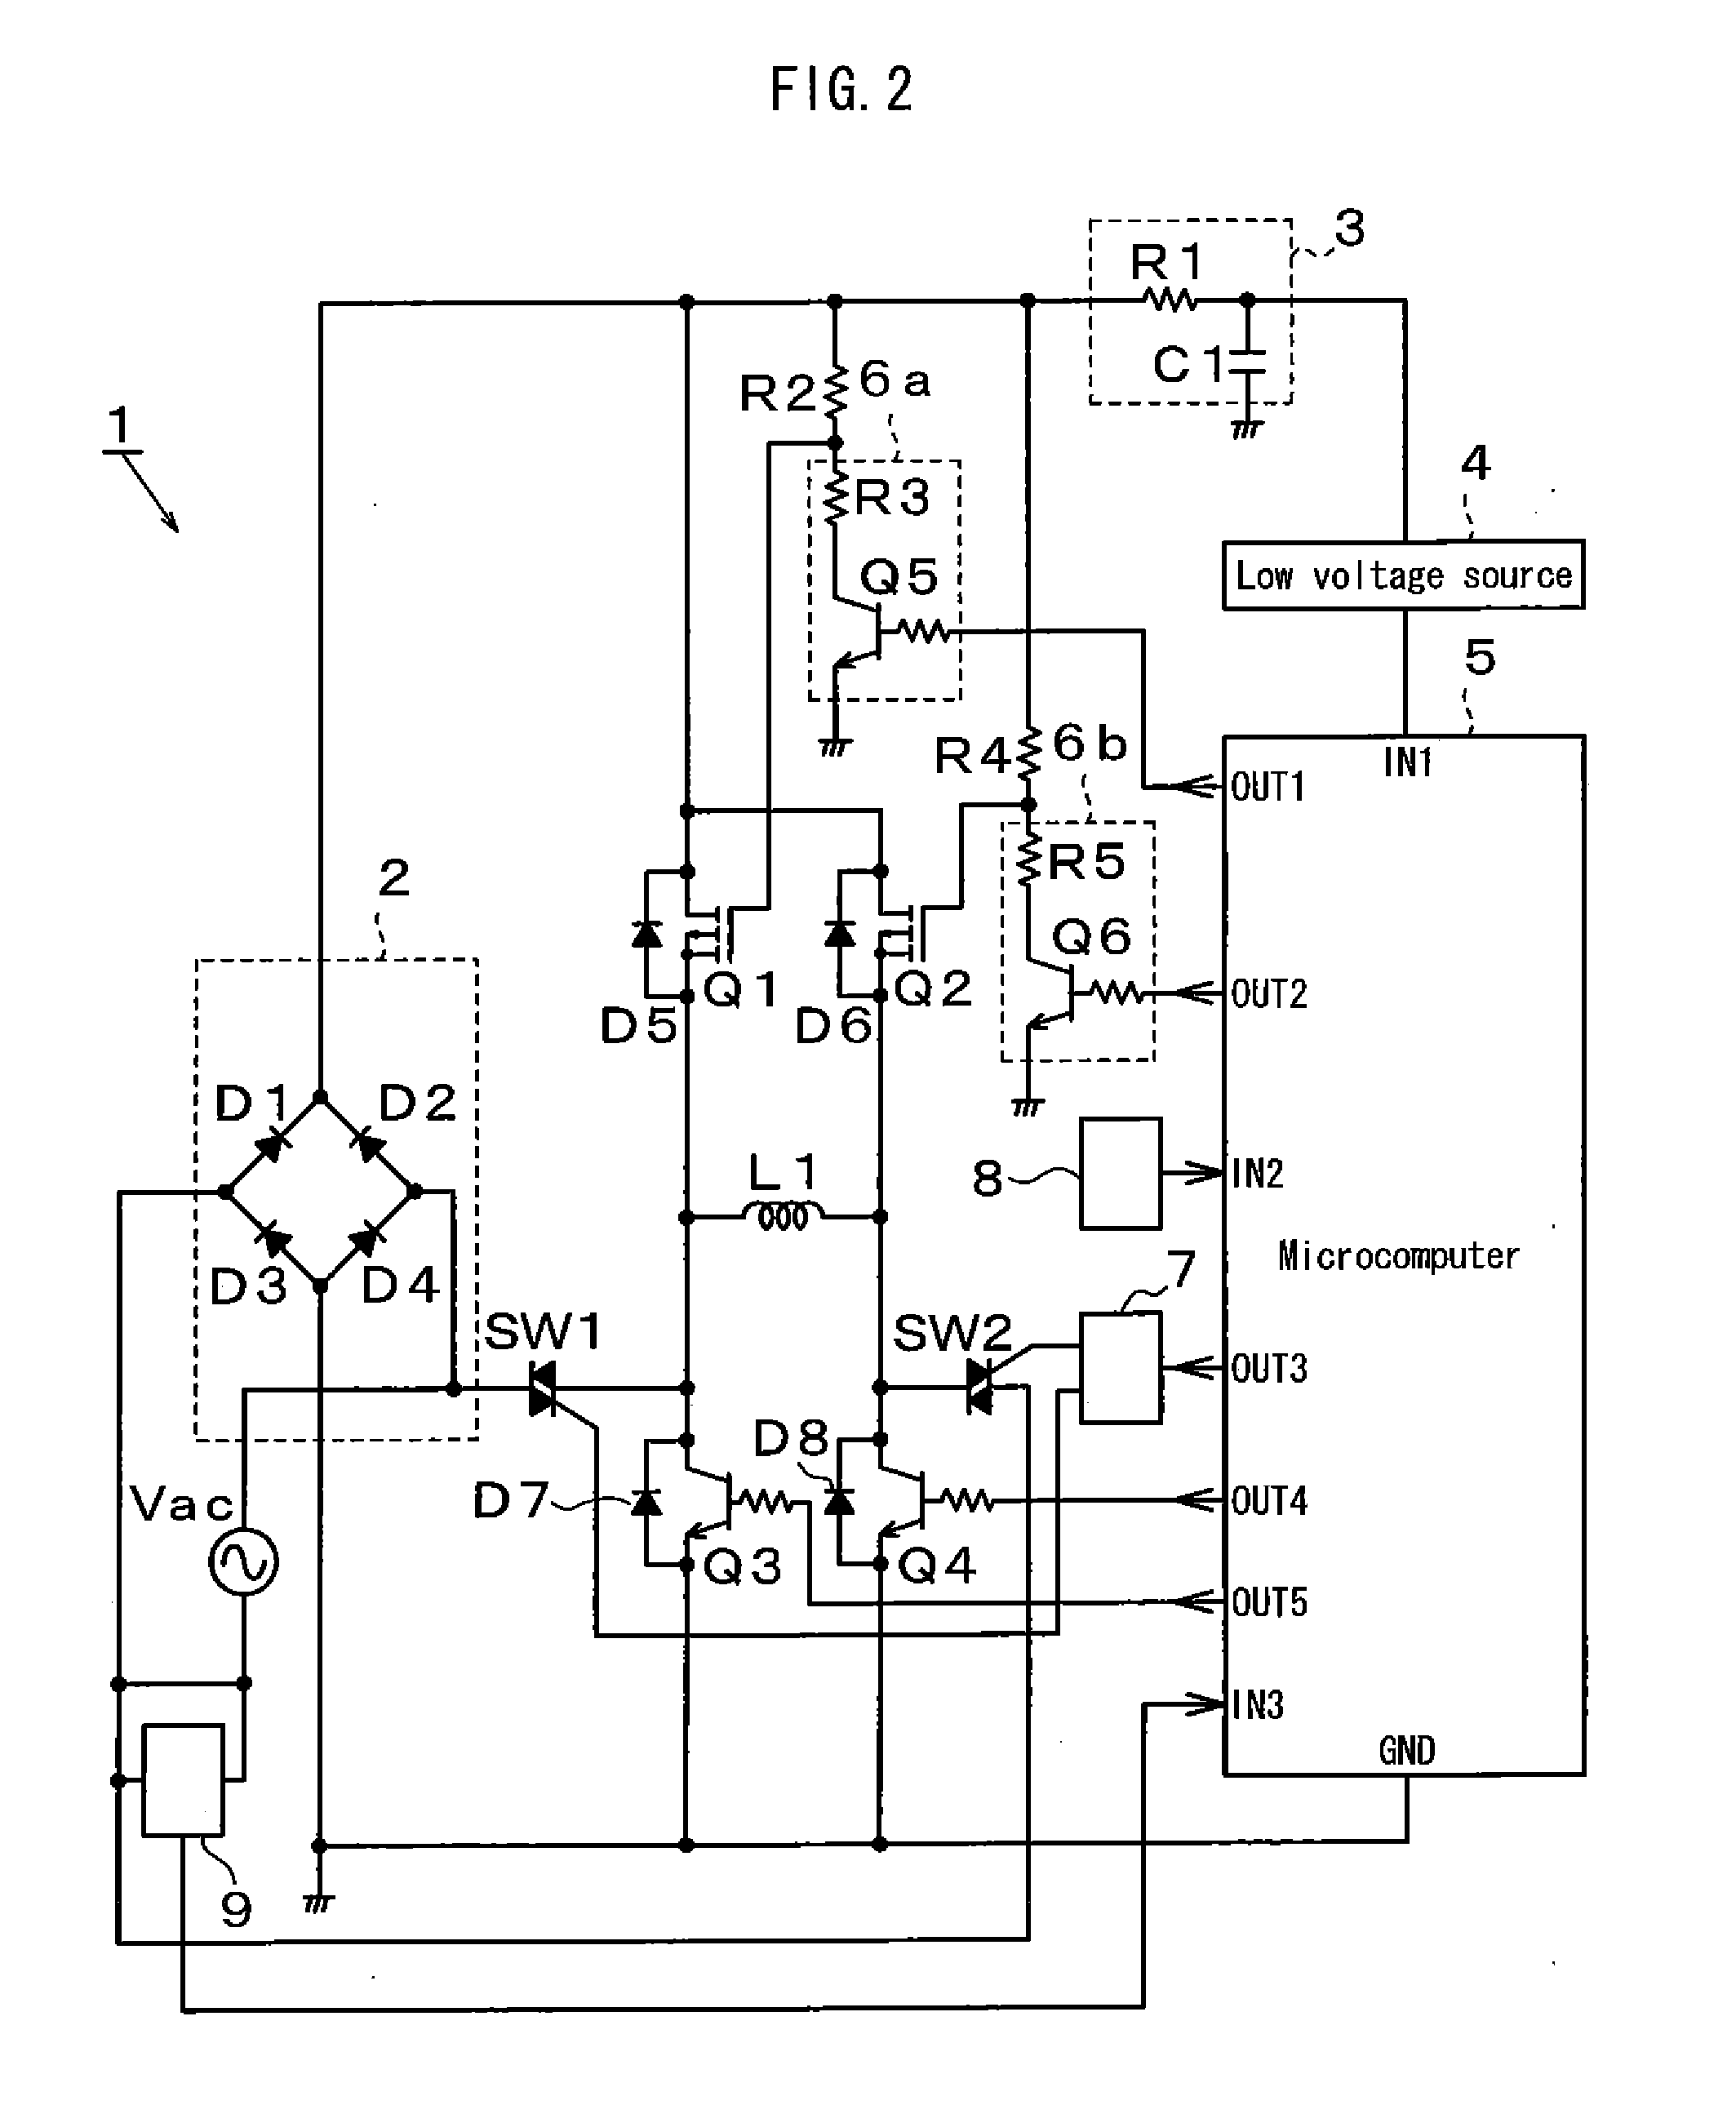 Single-phase ac synchronized motor